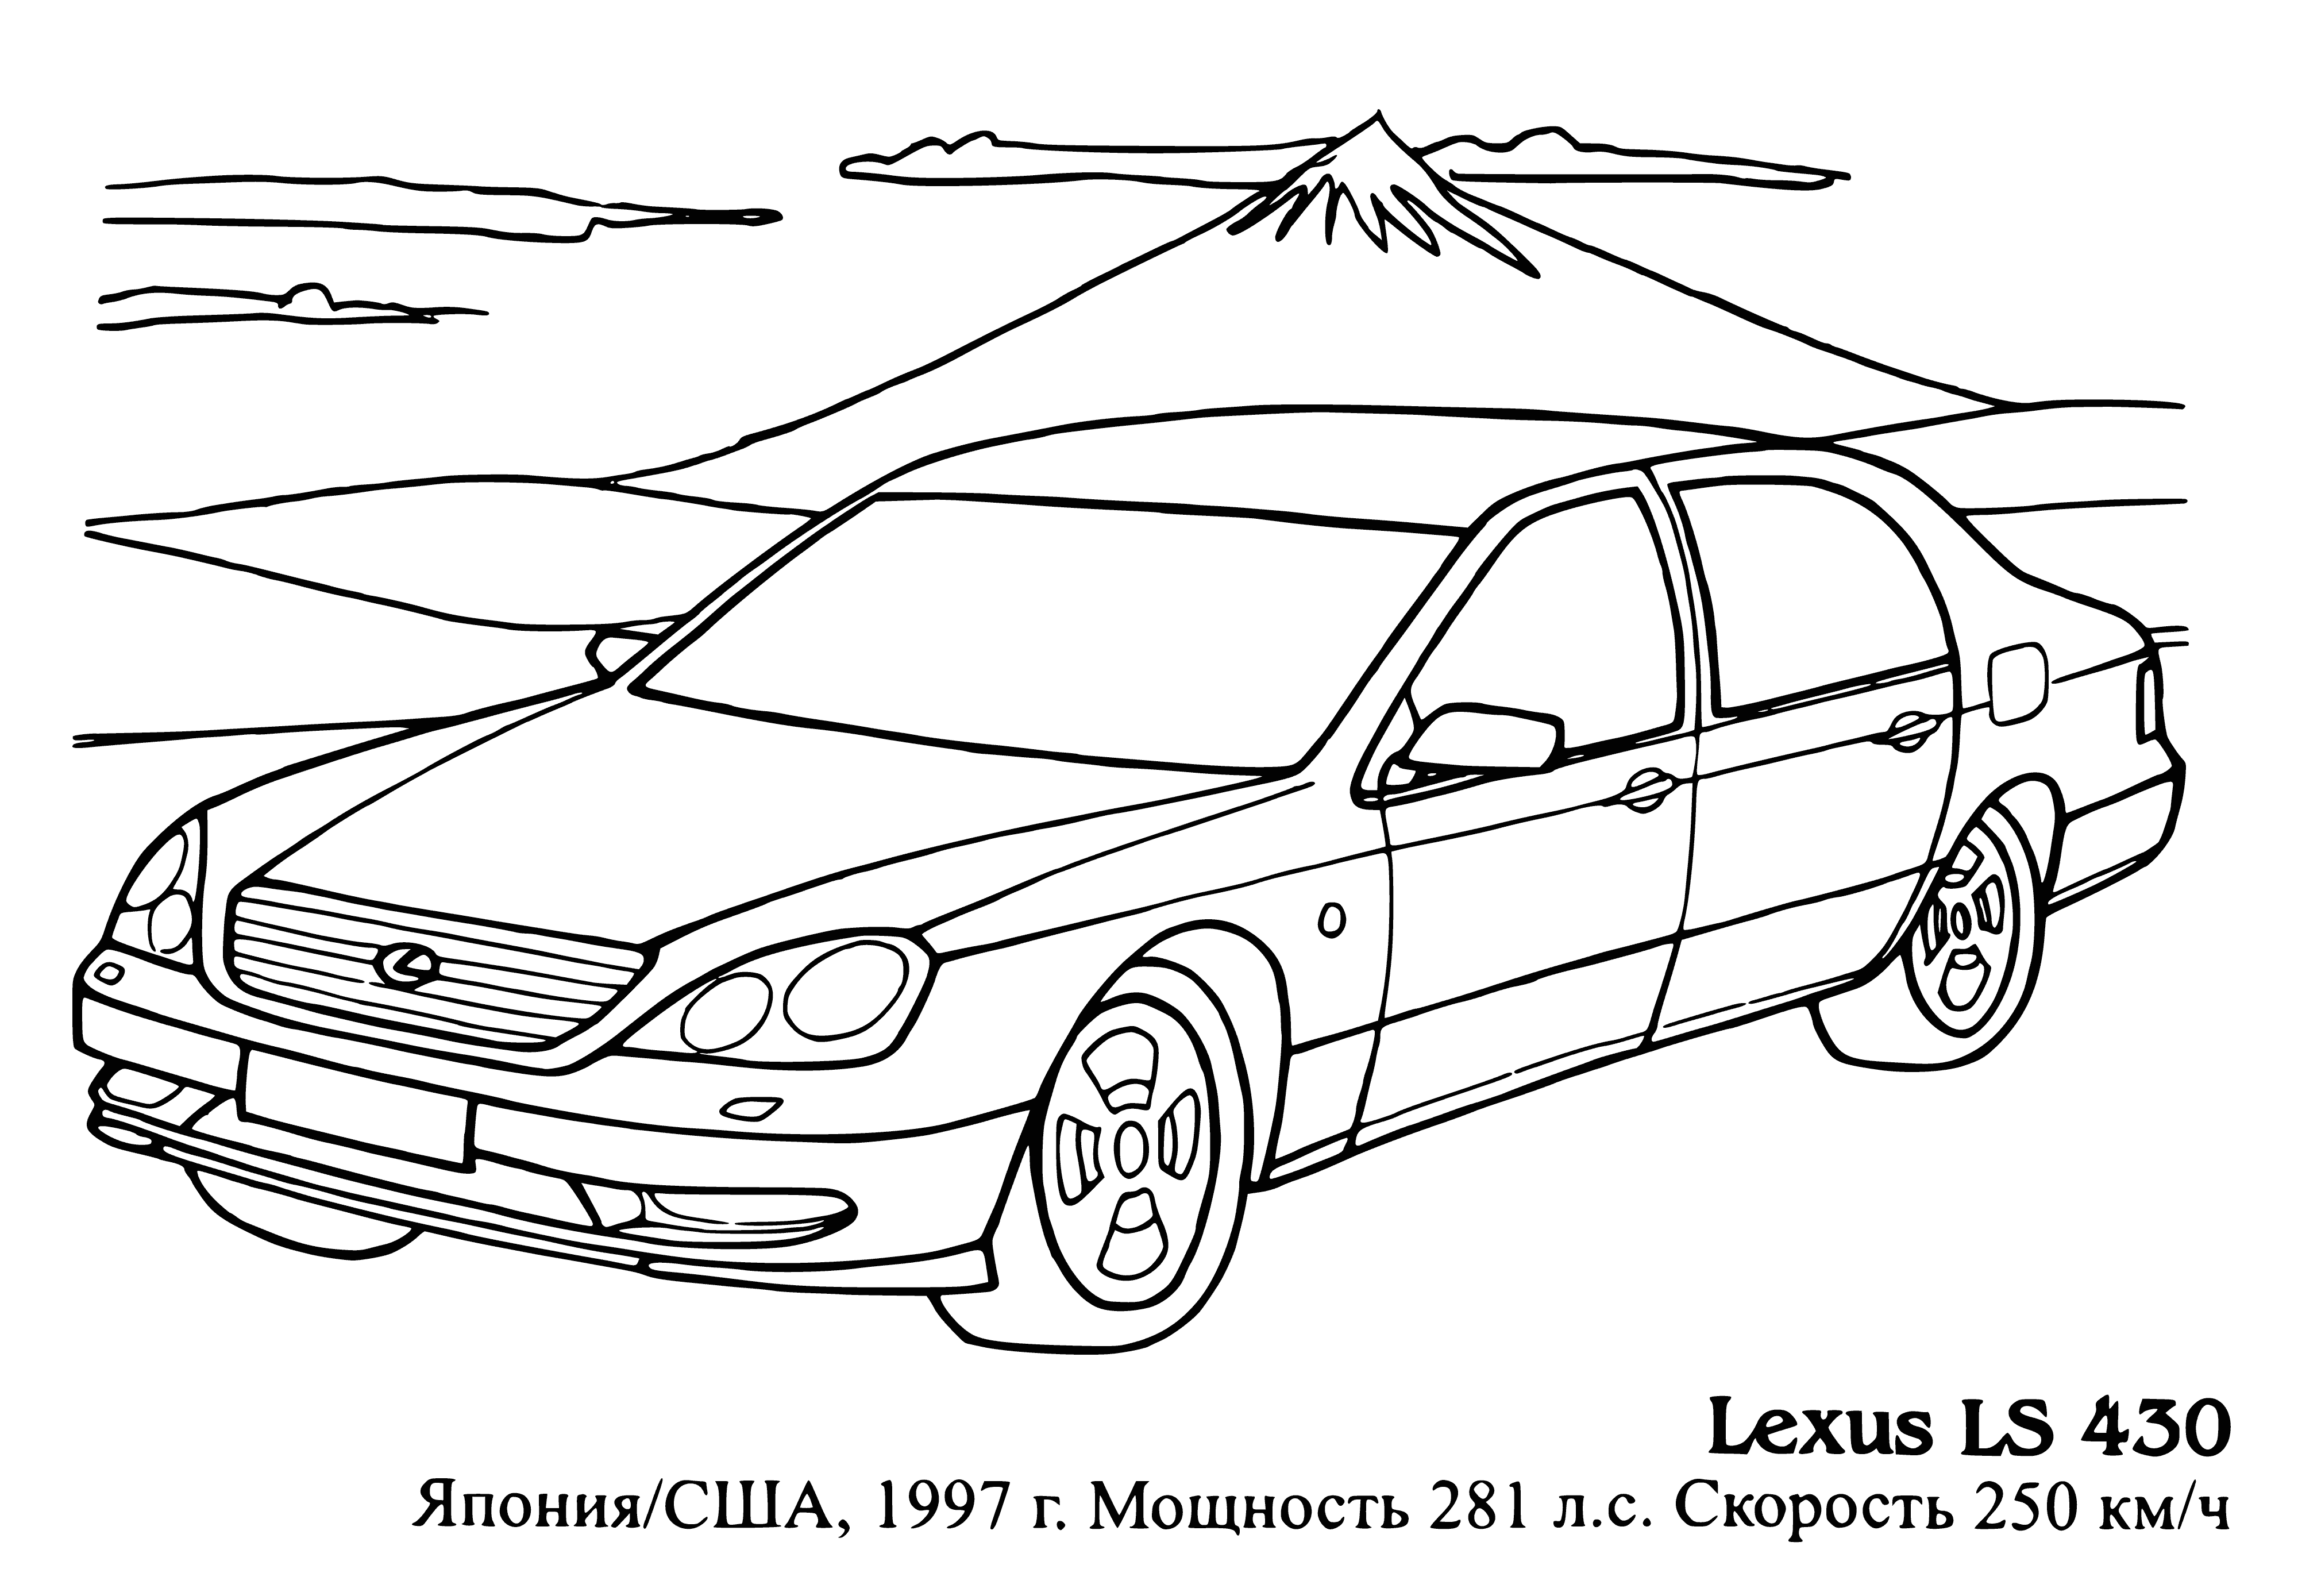 Lexus LS 430 coloring page